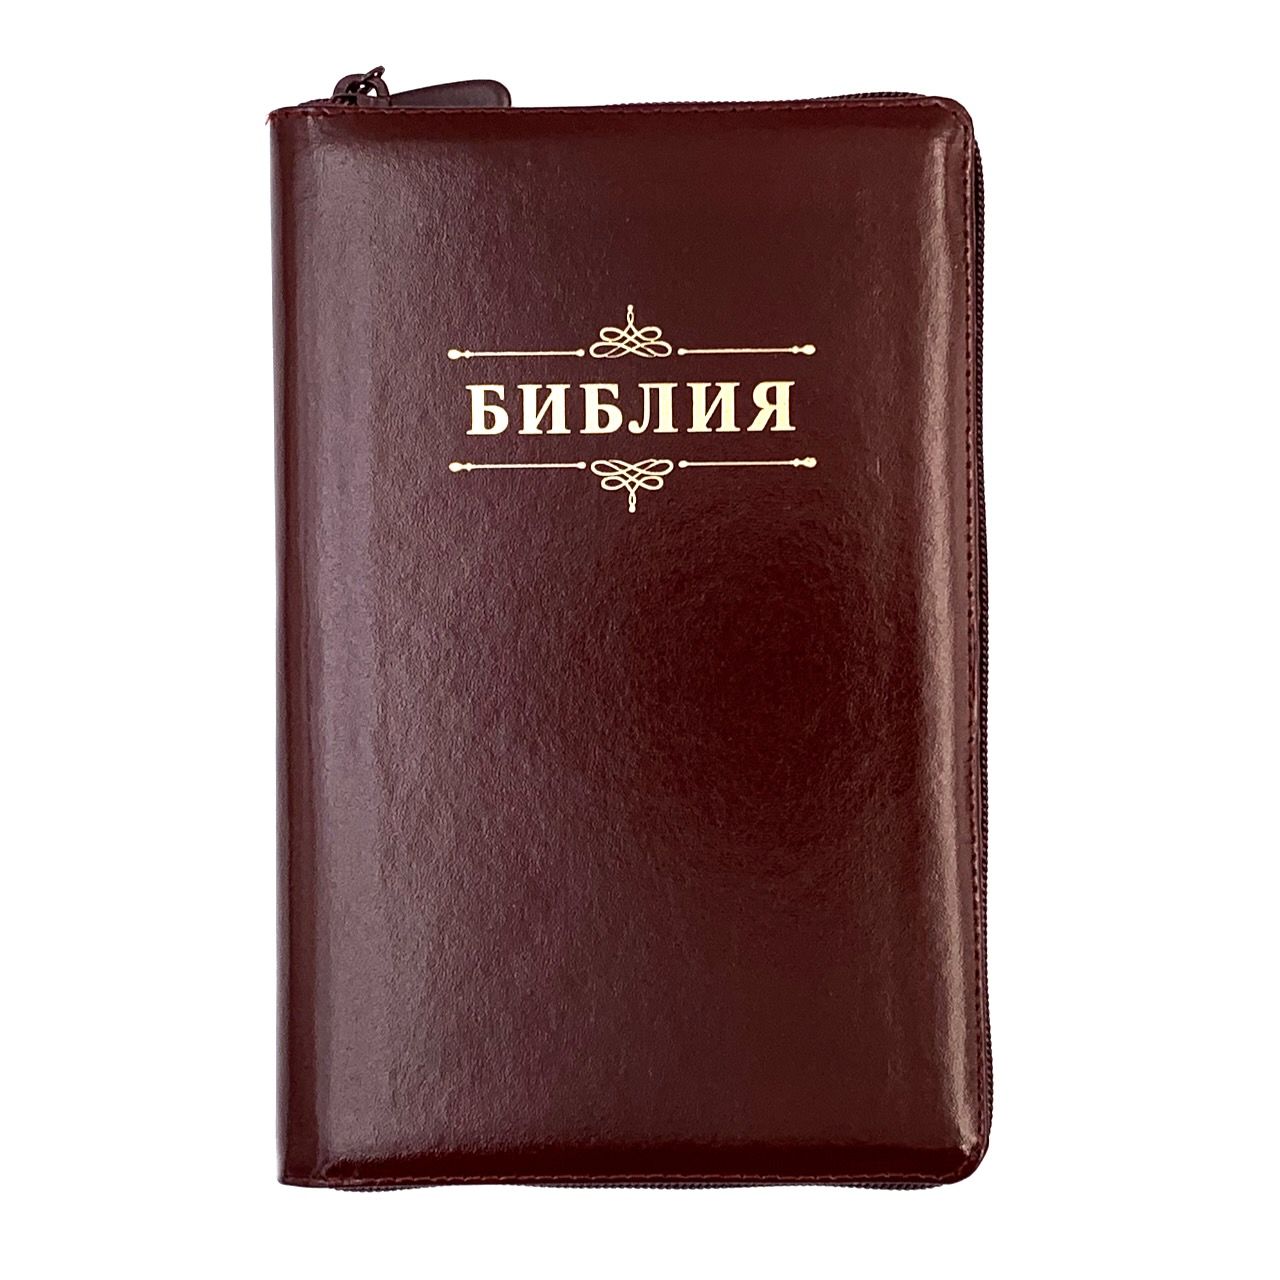 Библия 055zti код 23055-33 надпись "Библия с вензелем", кожаный переплет на молнии с индексами, цвет коричневый с оттенком бордо металлик, средний формат, 143*220 мм